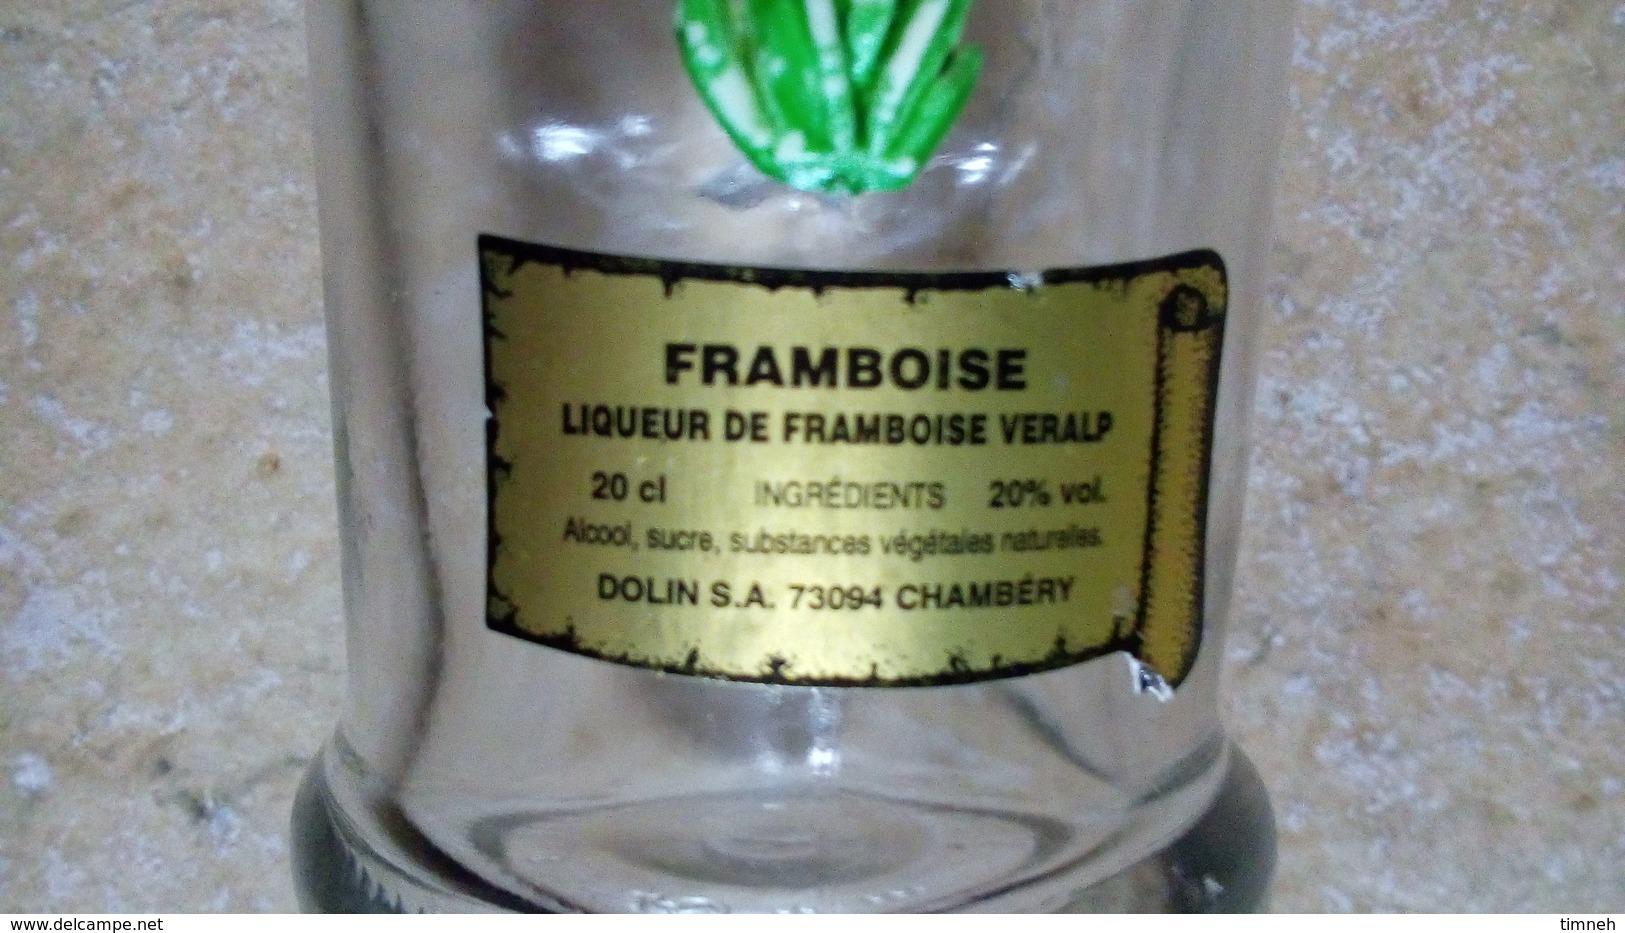 LIQUEUR FRAMBOISE VERALP - PETITE (20cl) BOUTEILLE VERRE - FLEUR GENTIANE Deco Plastique -DOLIN CHAMBERY - Spirituosen